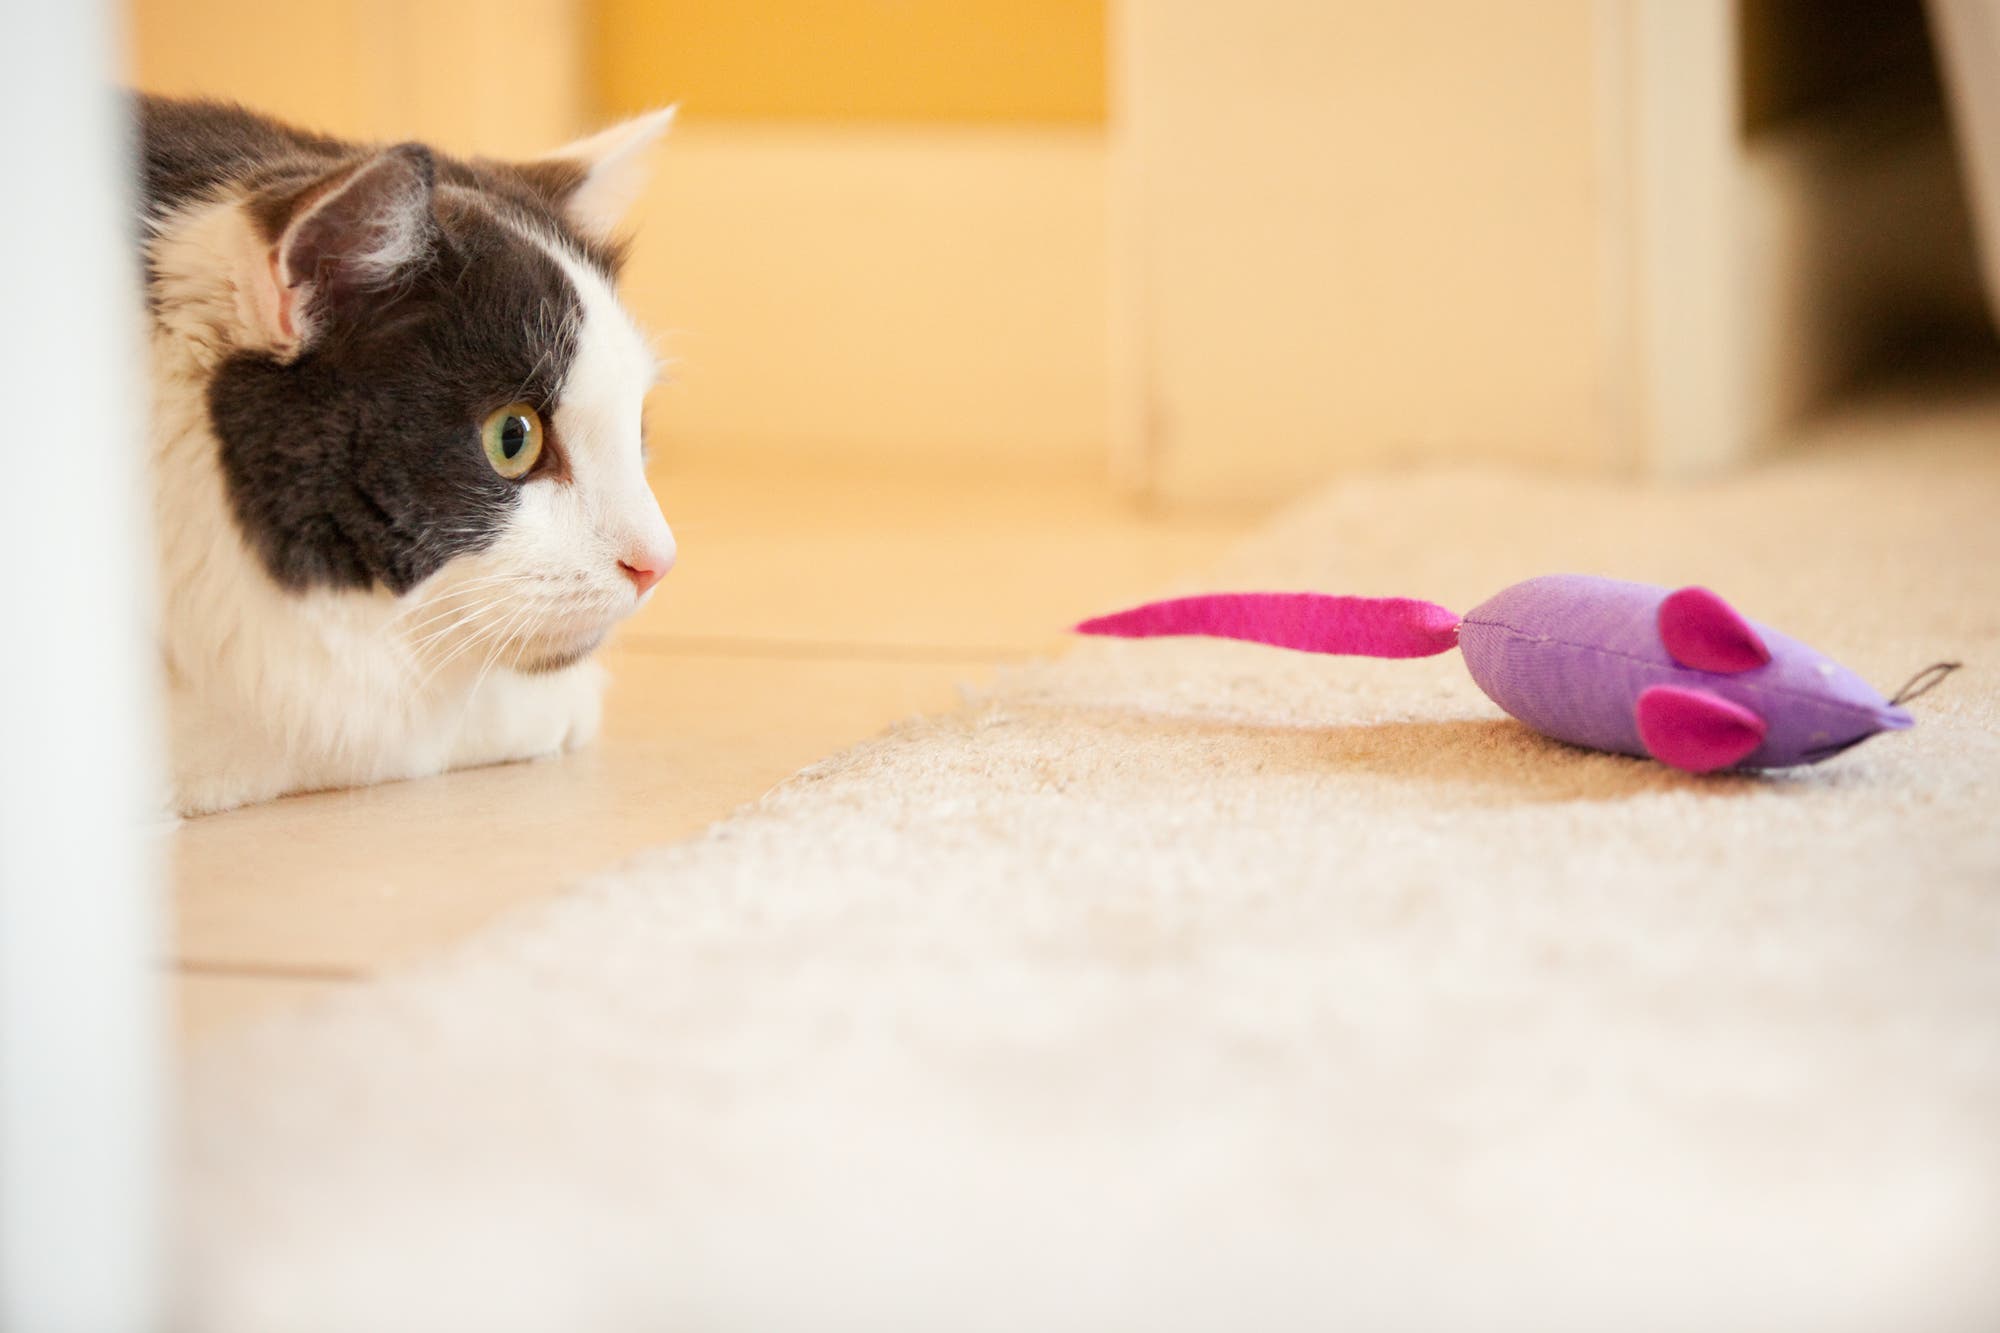 Katze schleicht sich an Spielzeugmaus an